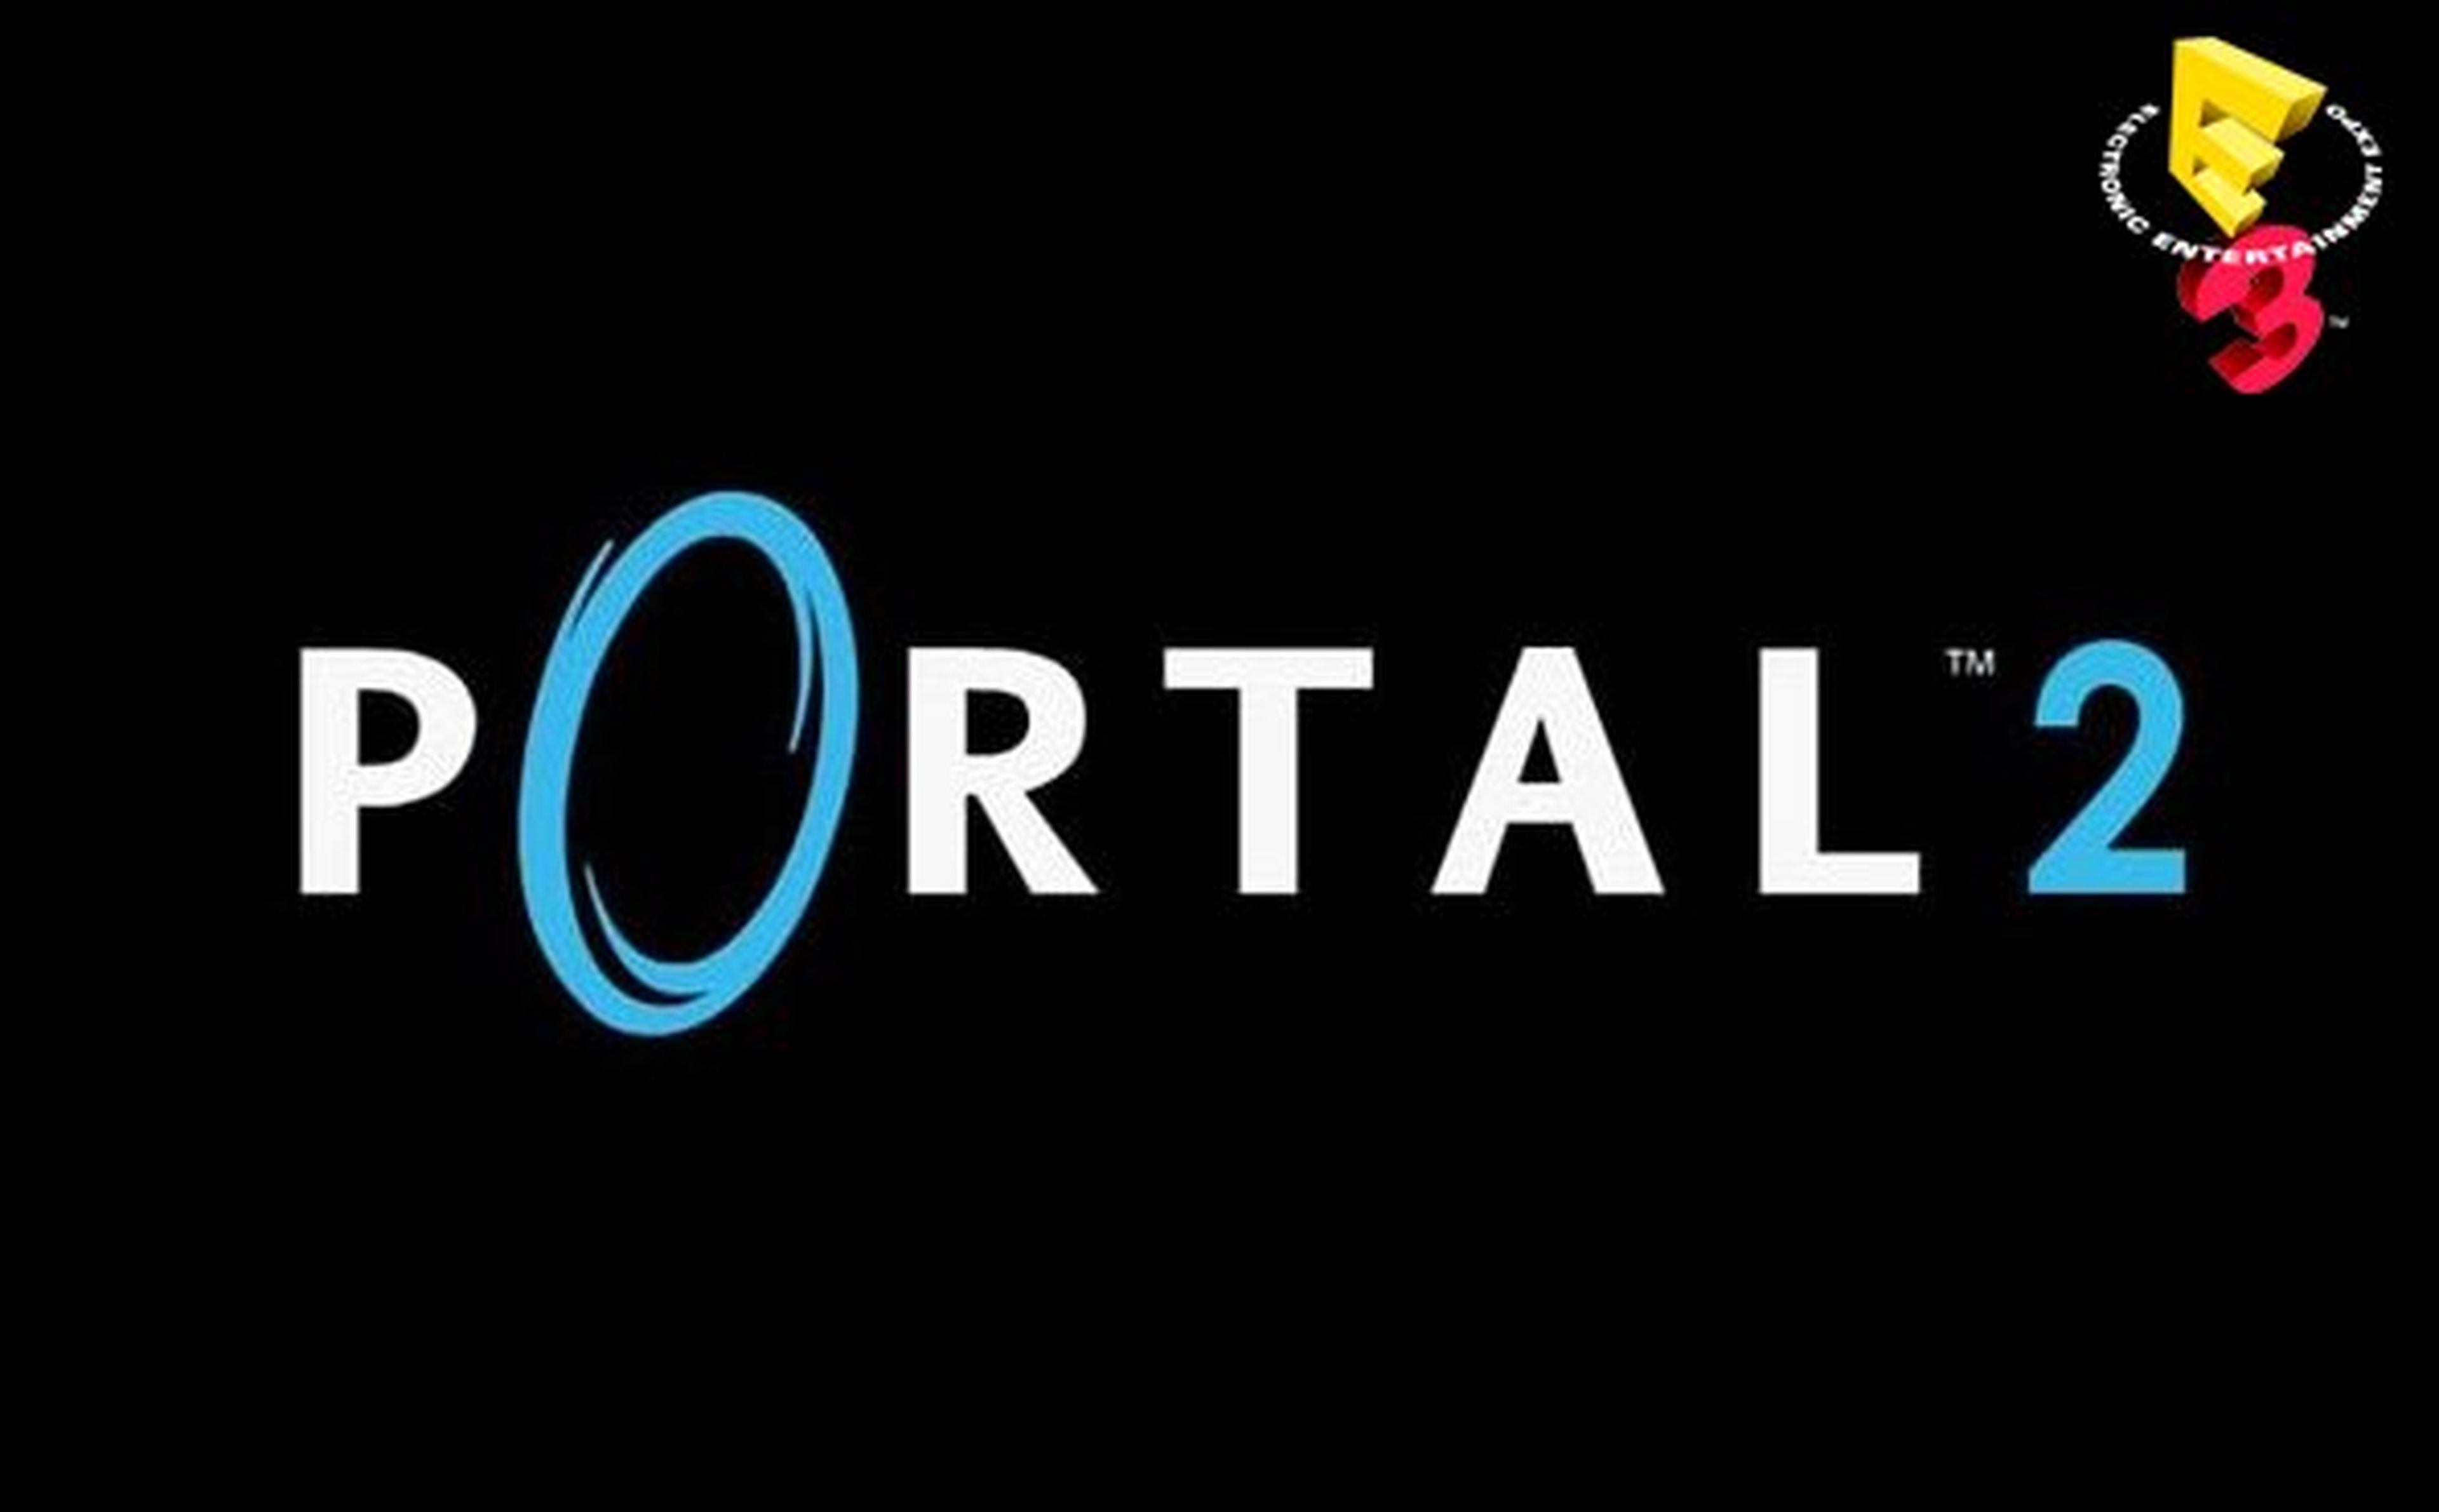 La tarta de Portal 2 llegará a PS3